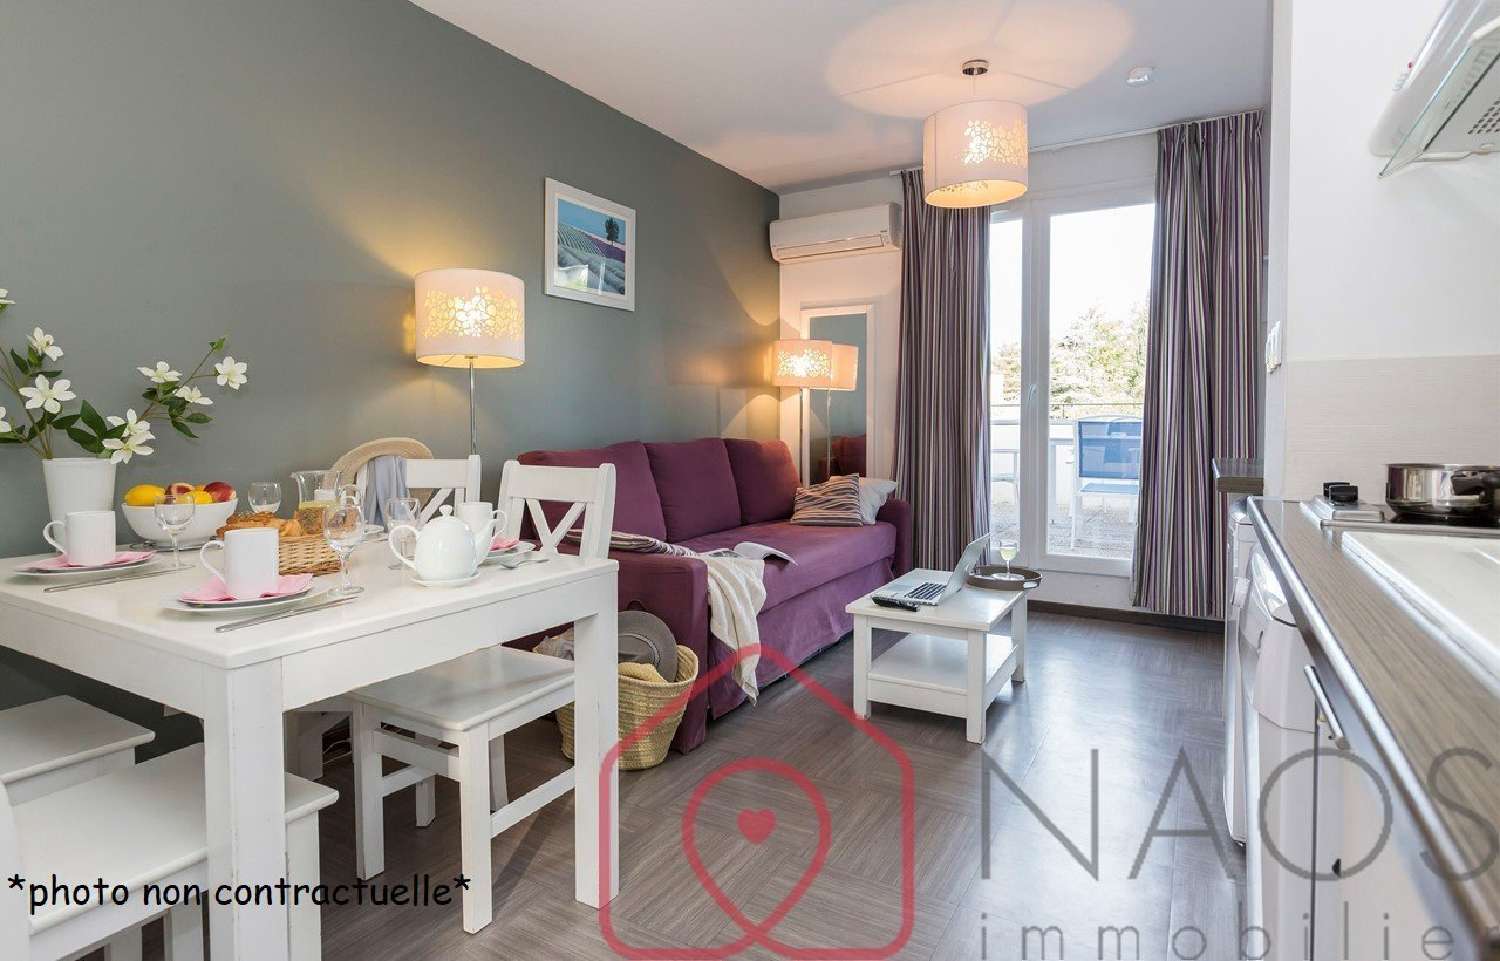  à vendre appartement Gréoux-les-Bains Alpes-de-Haute-Provence 1